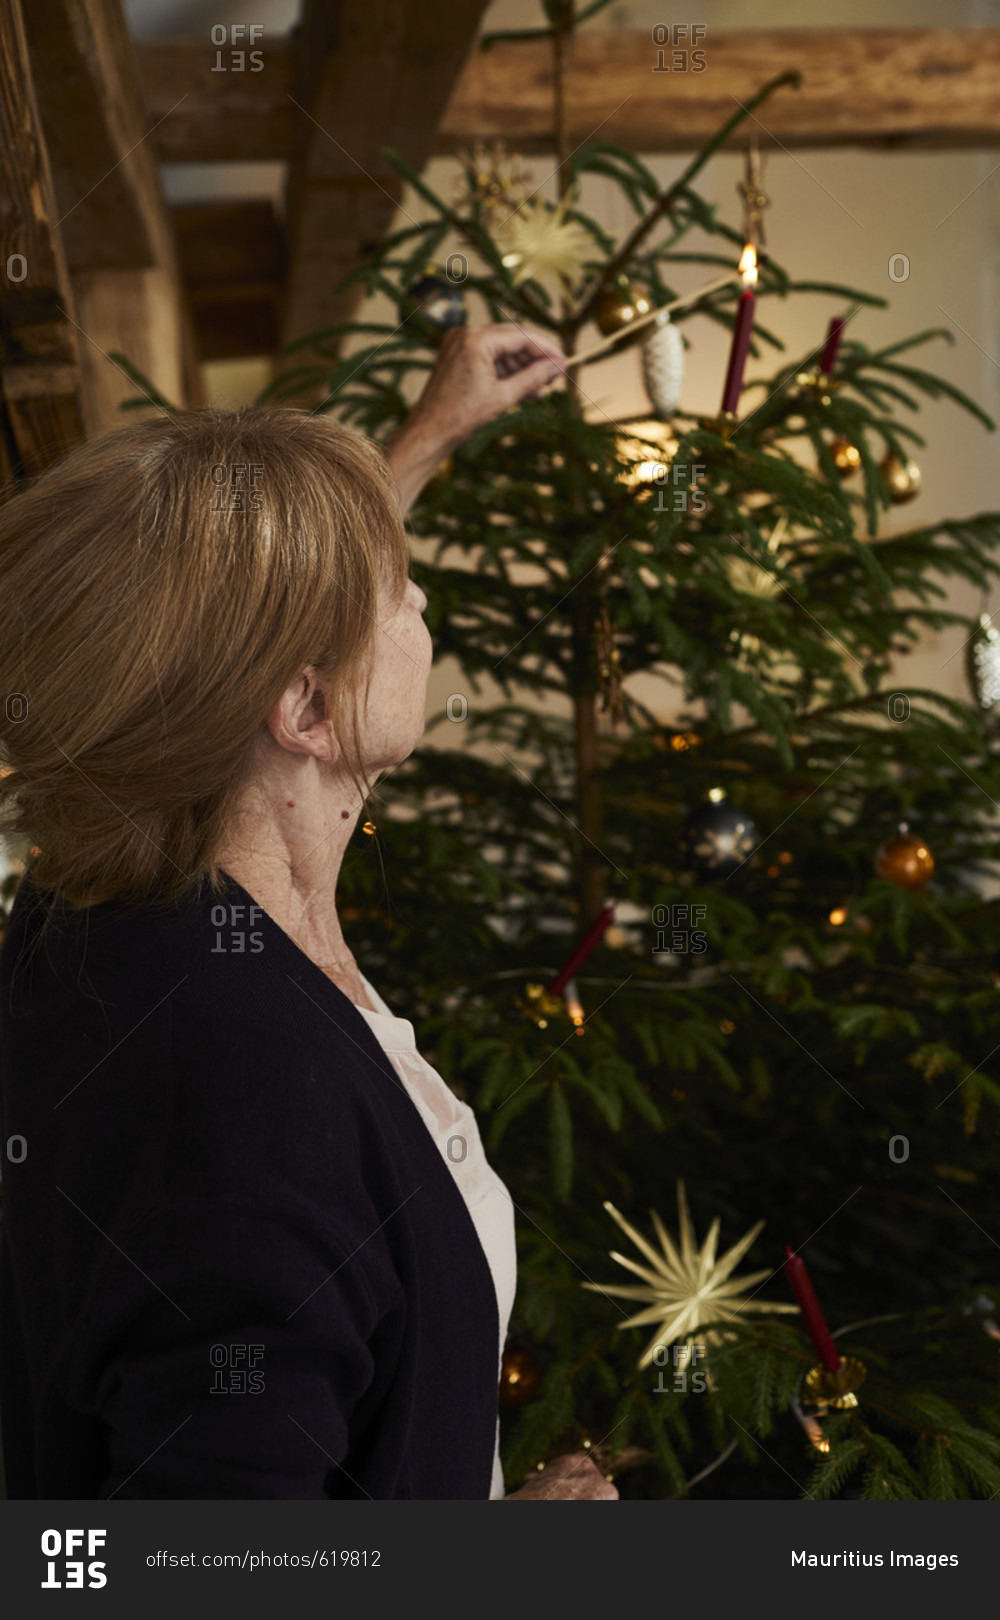 Woman lights candles on Christmas tree, Christmas Eve